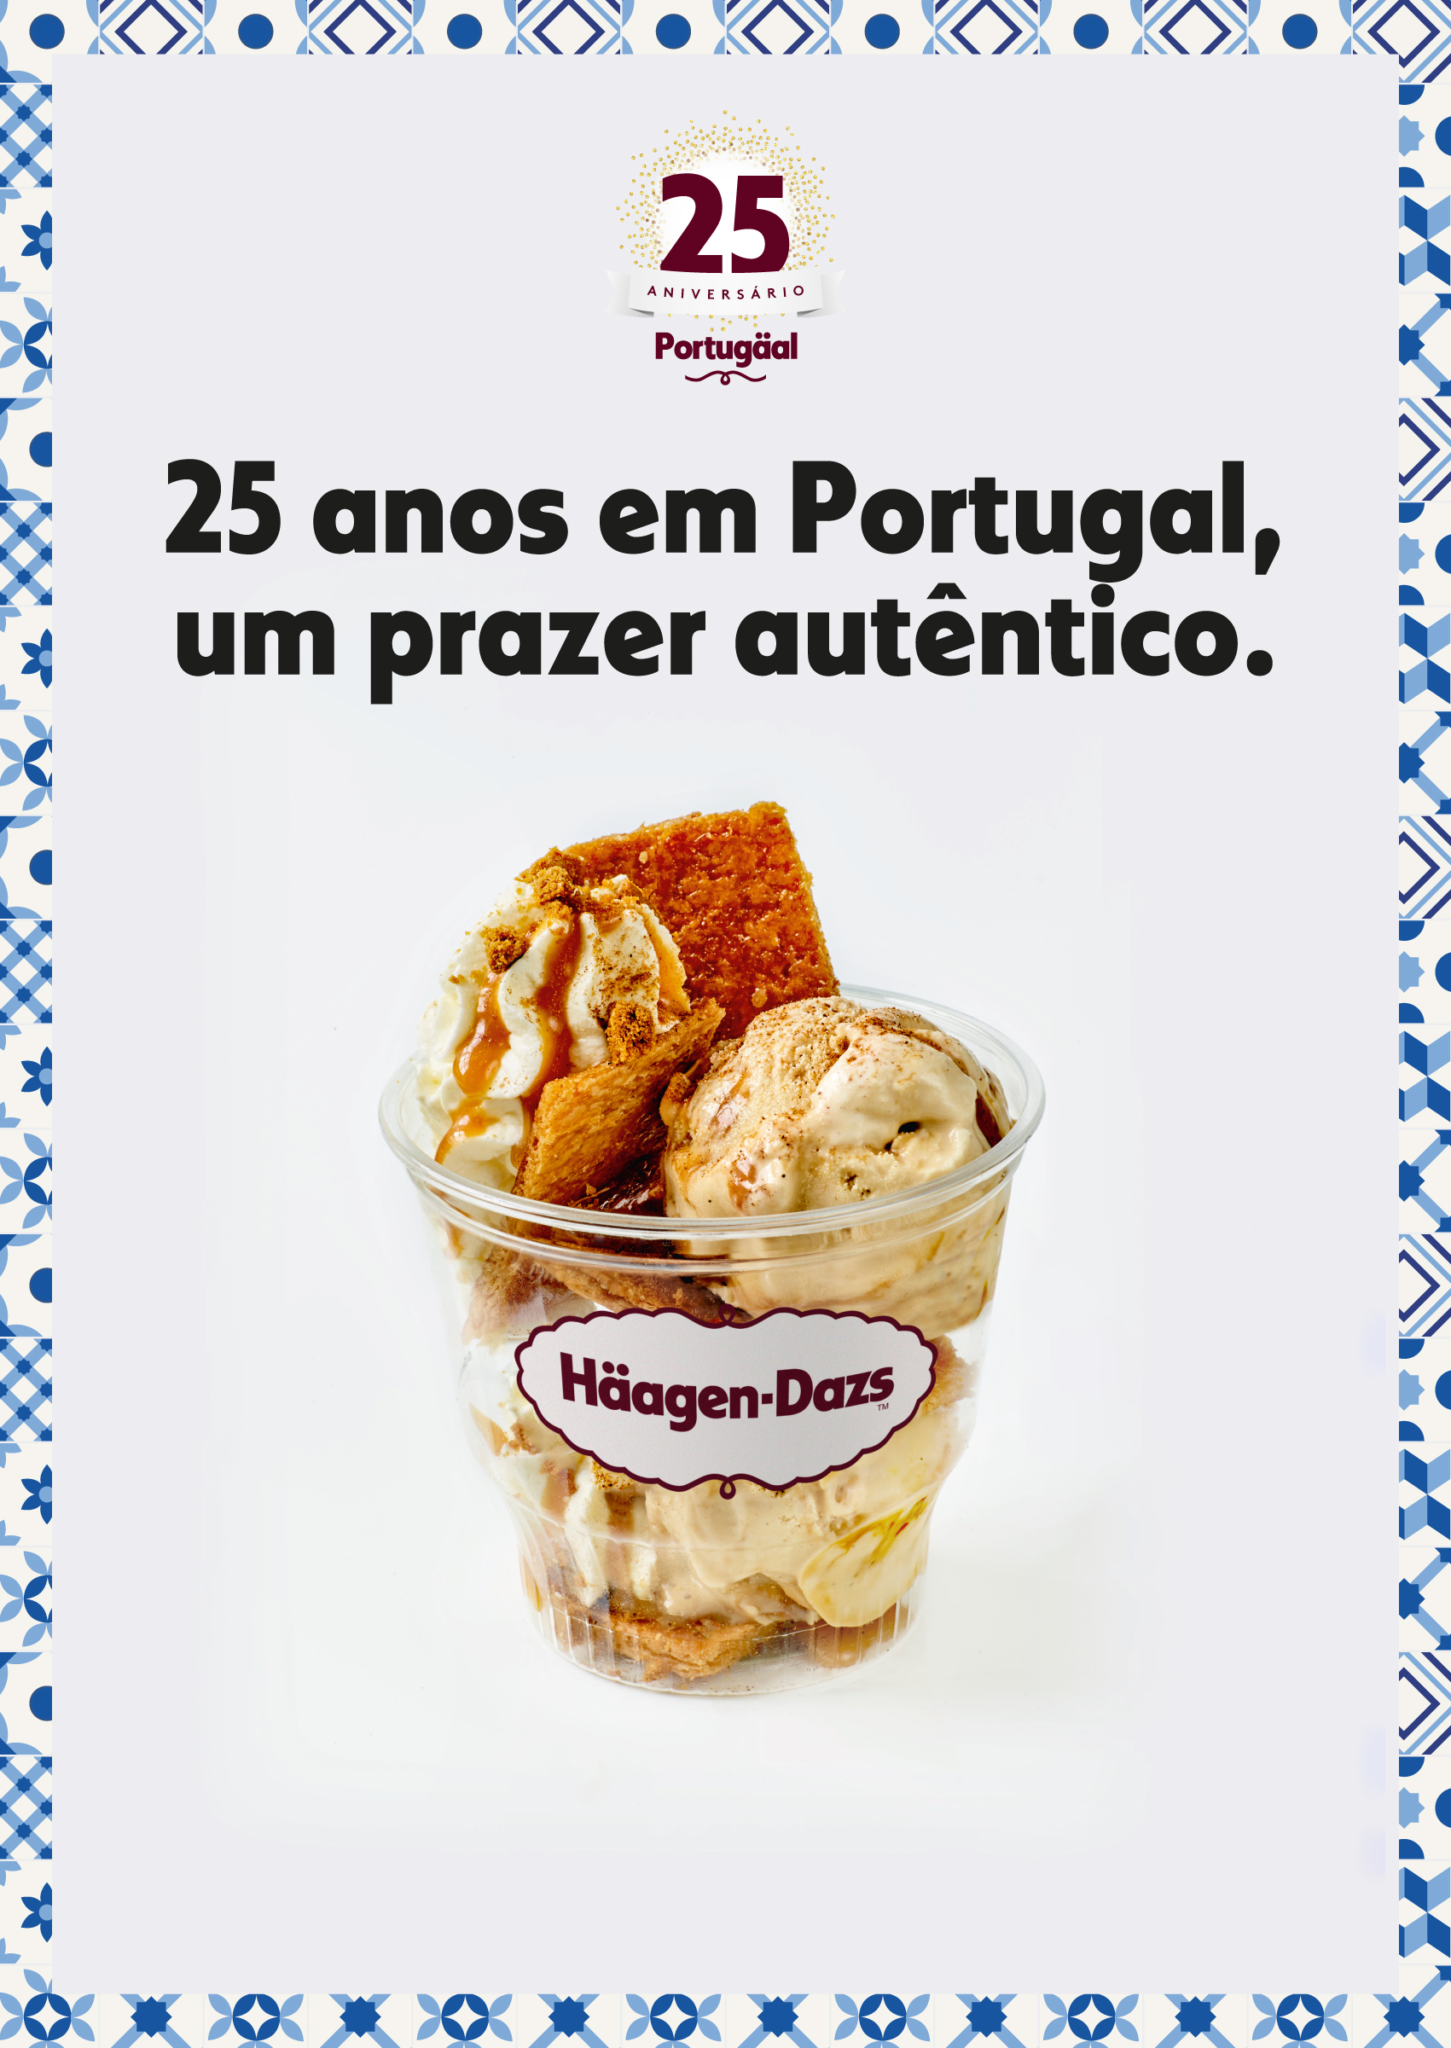 Häagen-Dazs cria gelado exclusivo para o mercado português - Meios & Publicidade